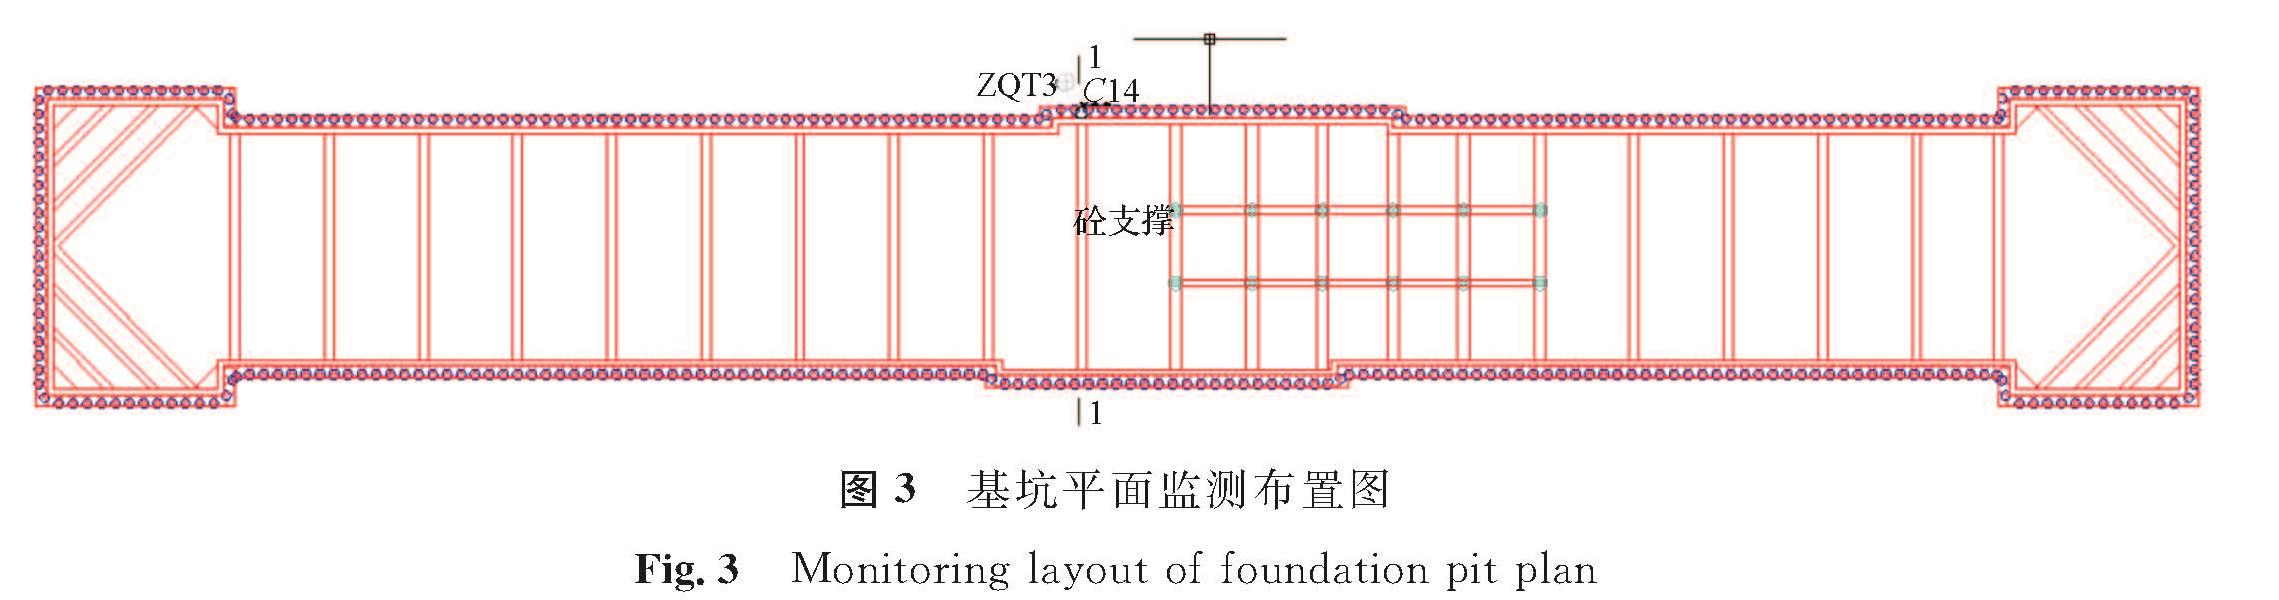 图3 基坑平面监测布置图<br/>Fig.3 Monitoring layout of foundation pit plan